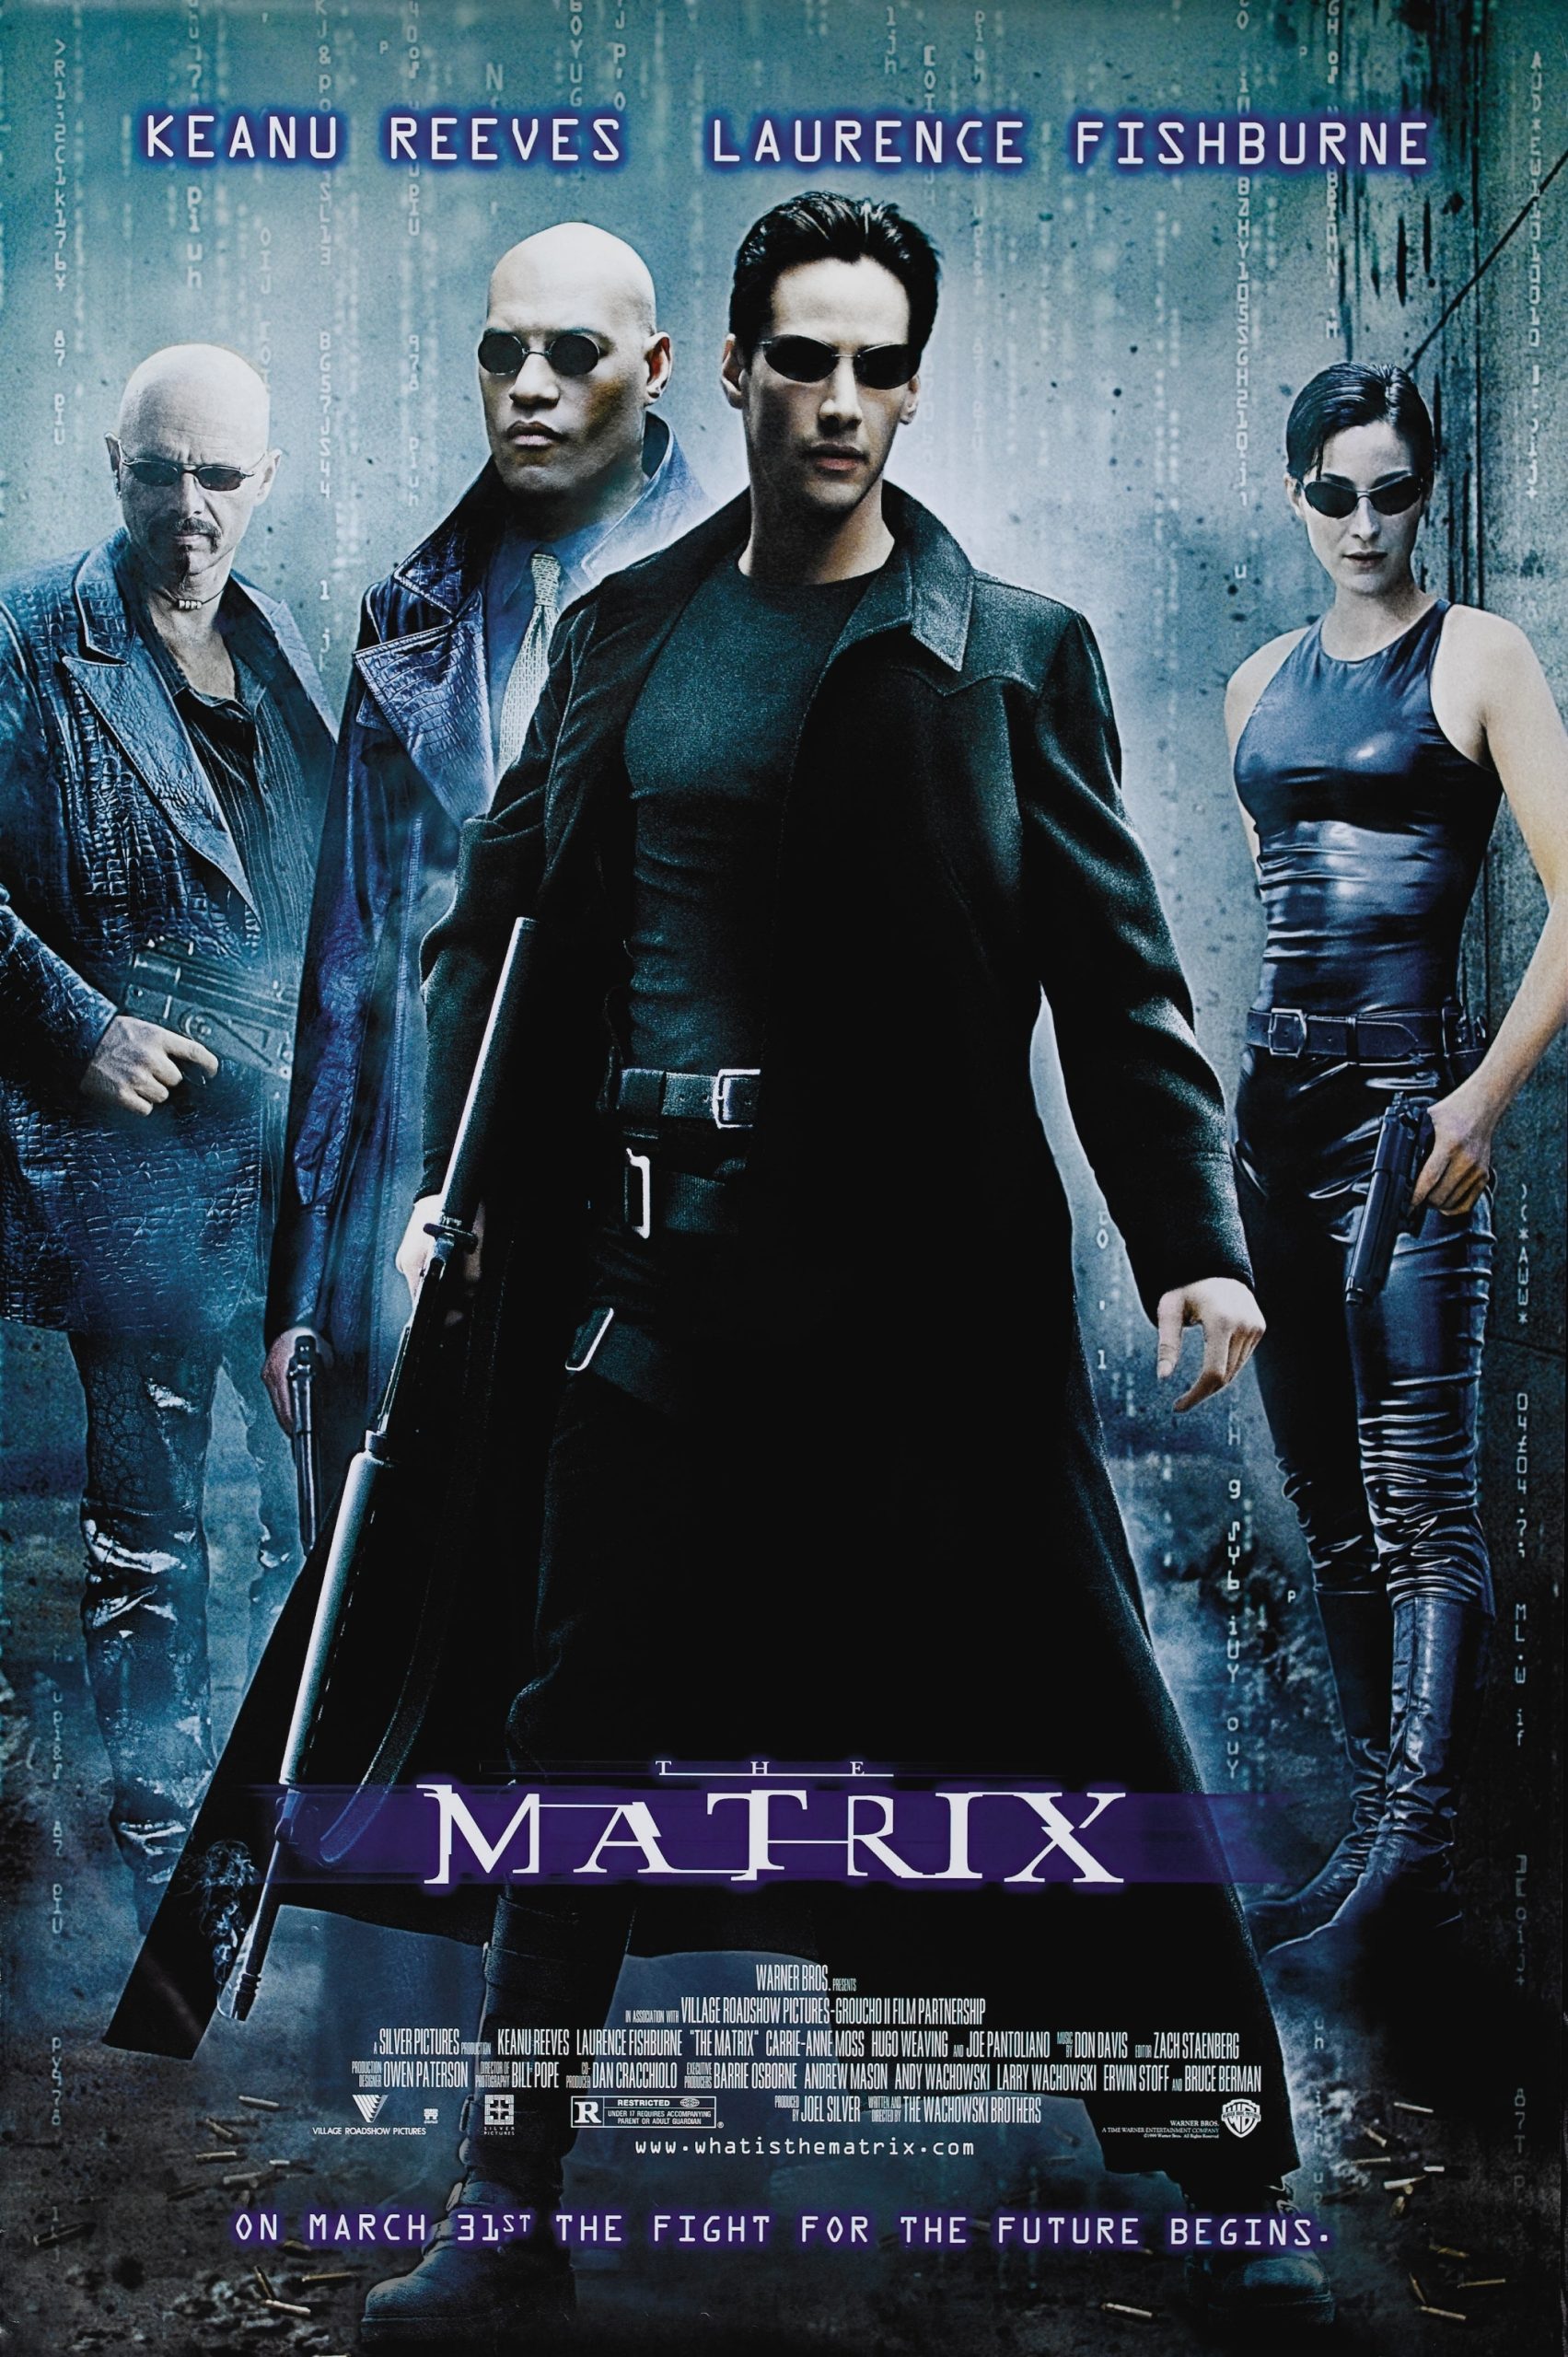 The Matrix 1 (1999) เพาะพันธุ์มนุษย์เหนือโลก Keanu Reeves